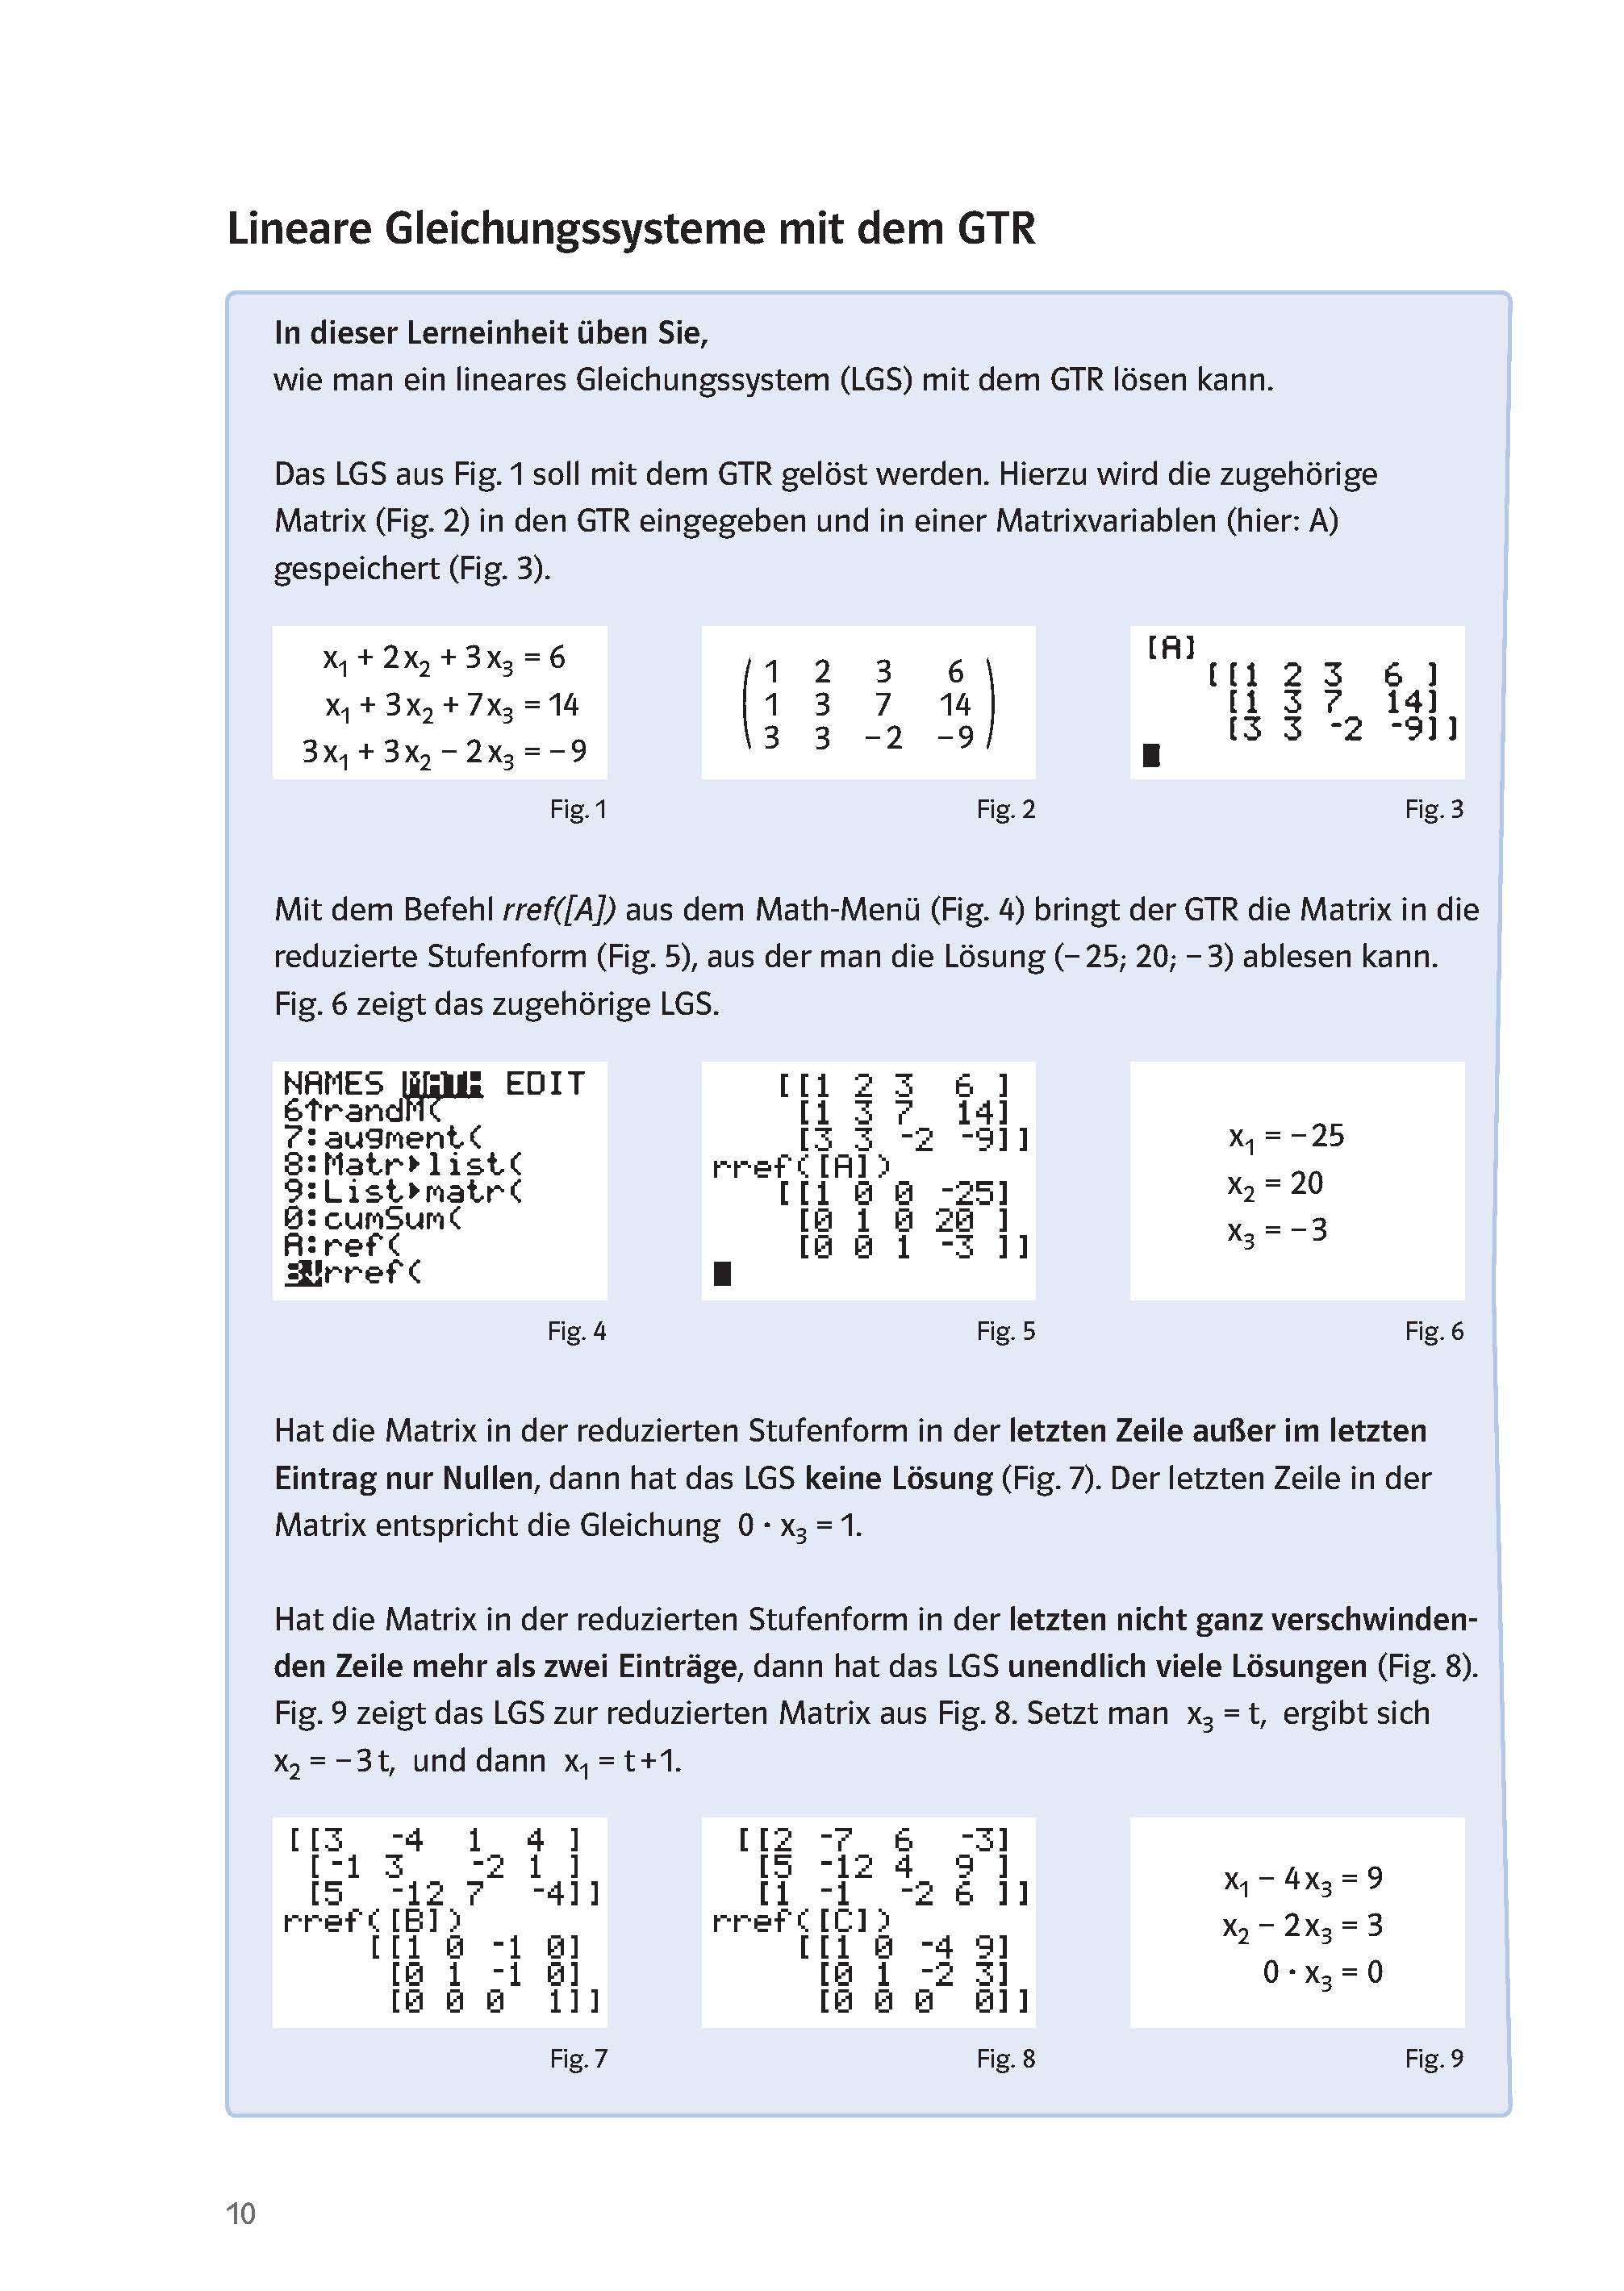 Klett Klausur-Training - Mathematik Analytische Geometrie und Lineare Algebra